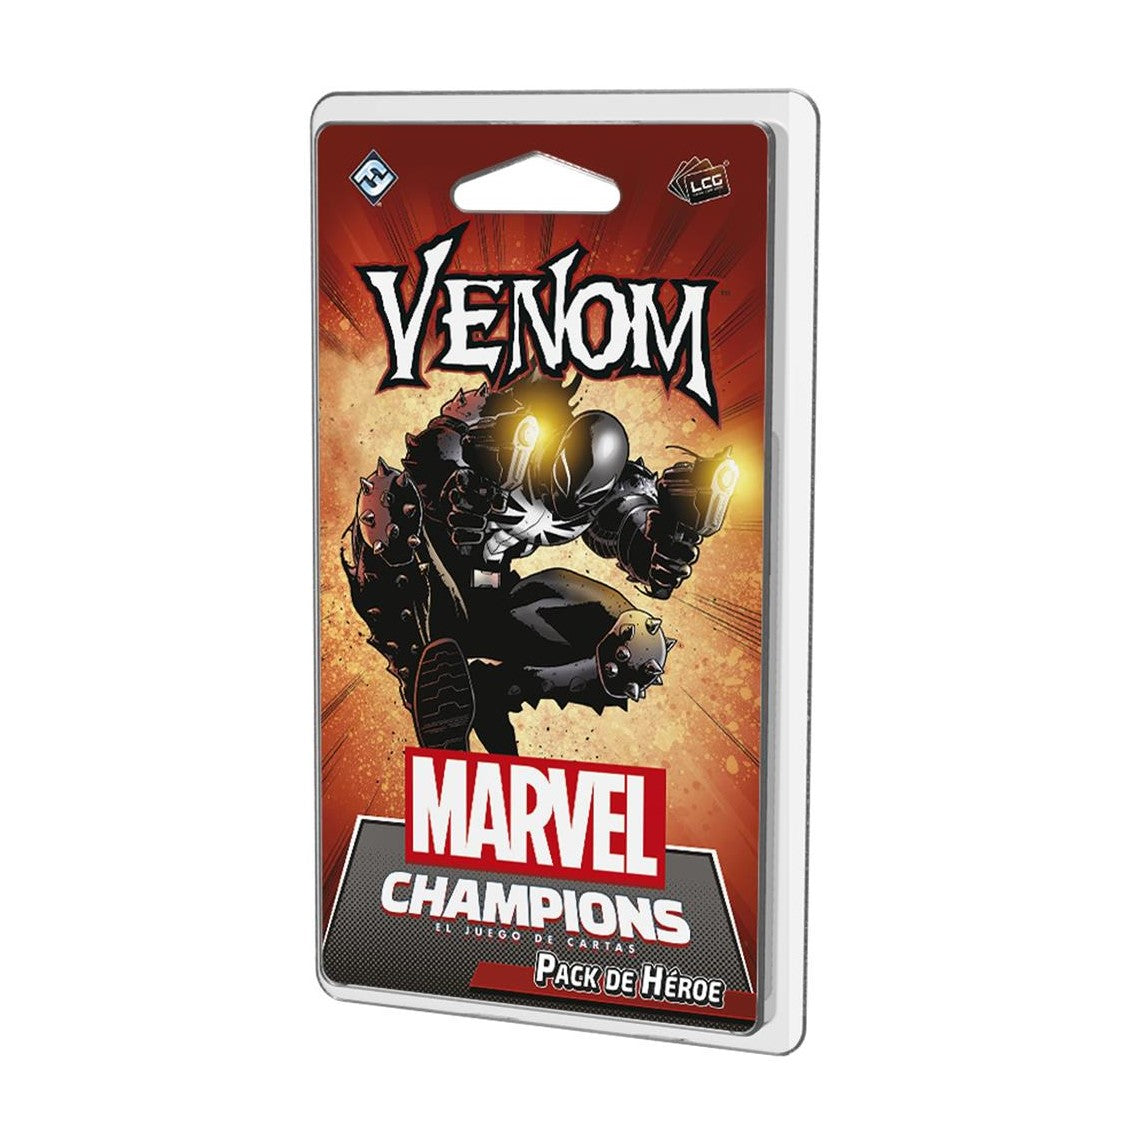 Juego de mesa Marvel Champions: Venom (pack de héroe)